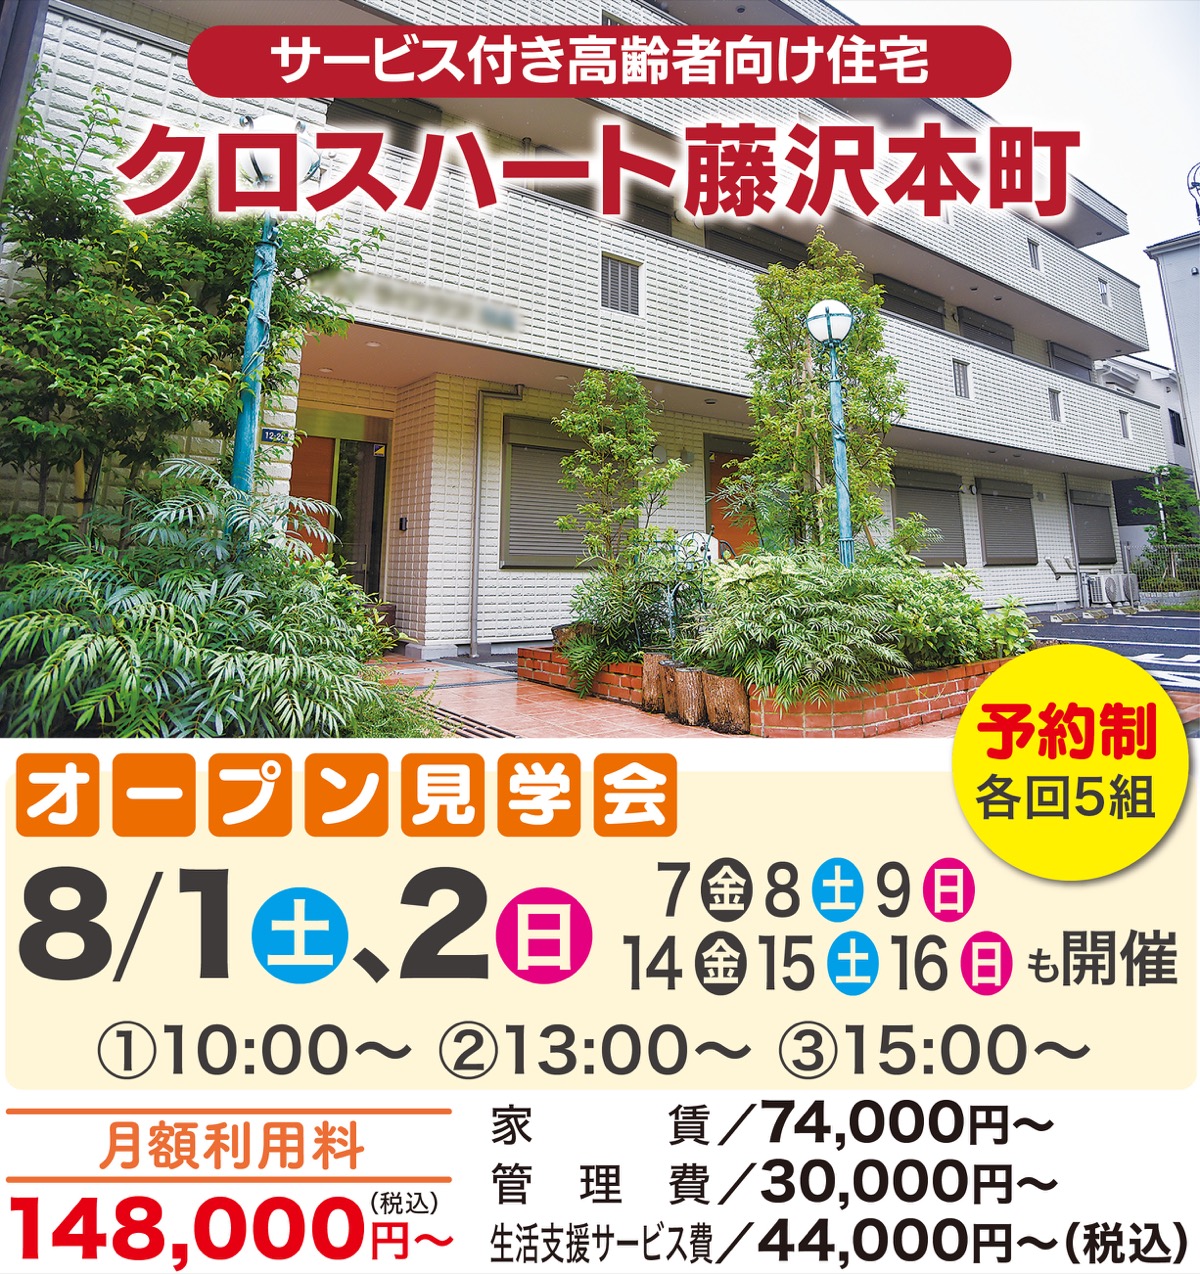 藤沢本町に安心の高齢者住宅